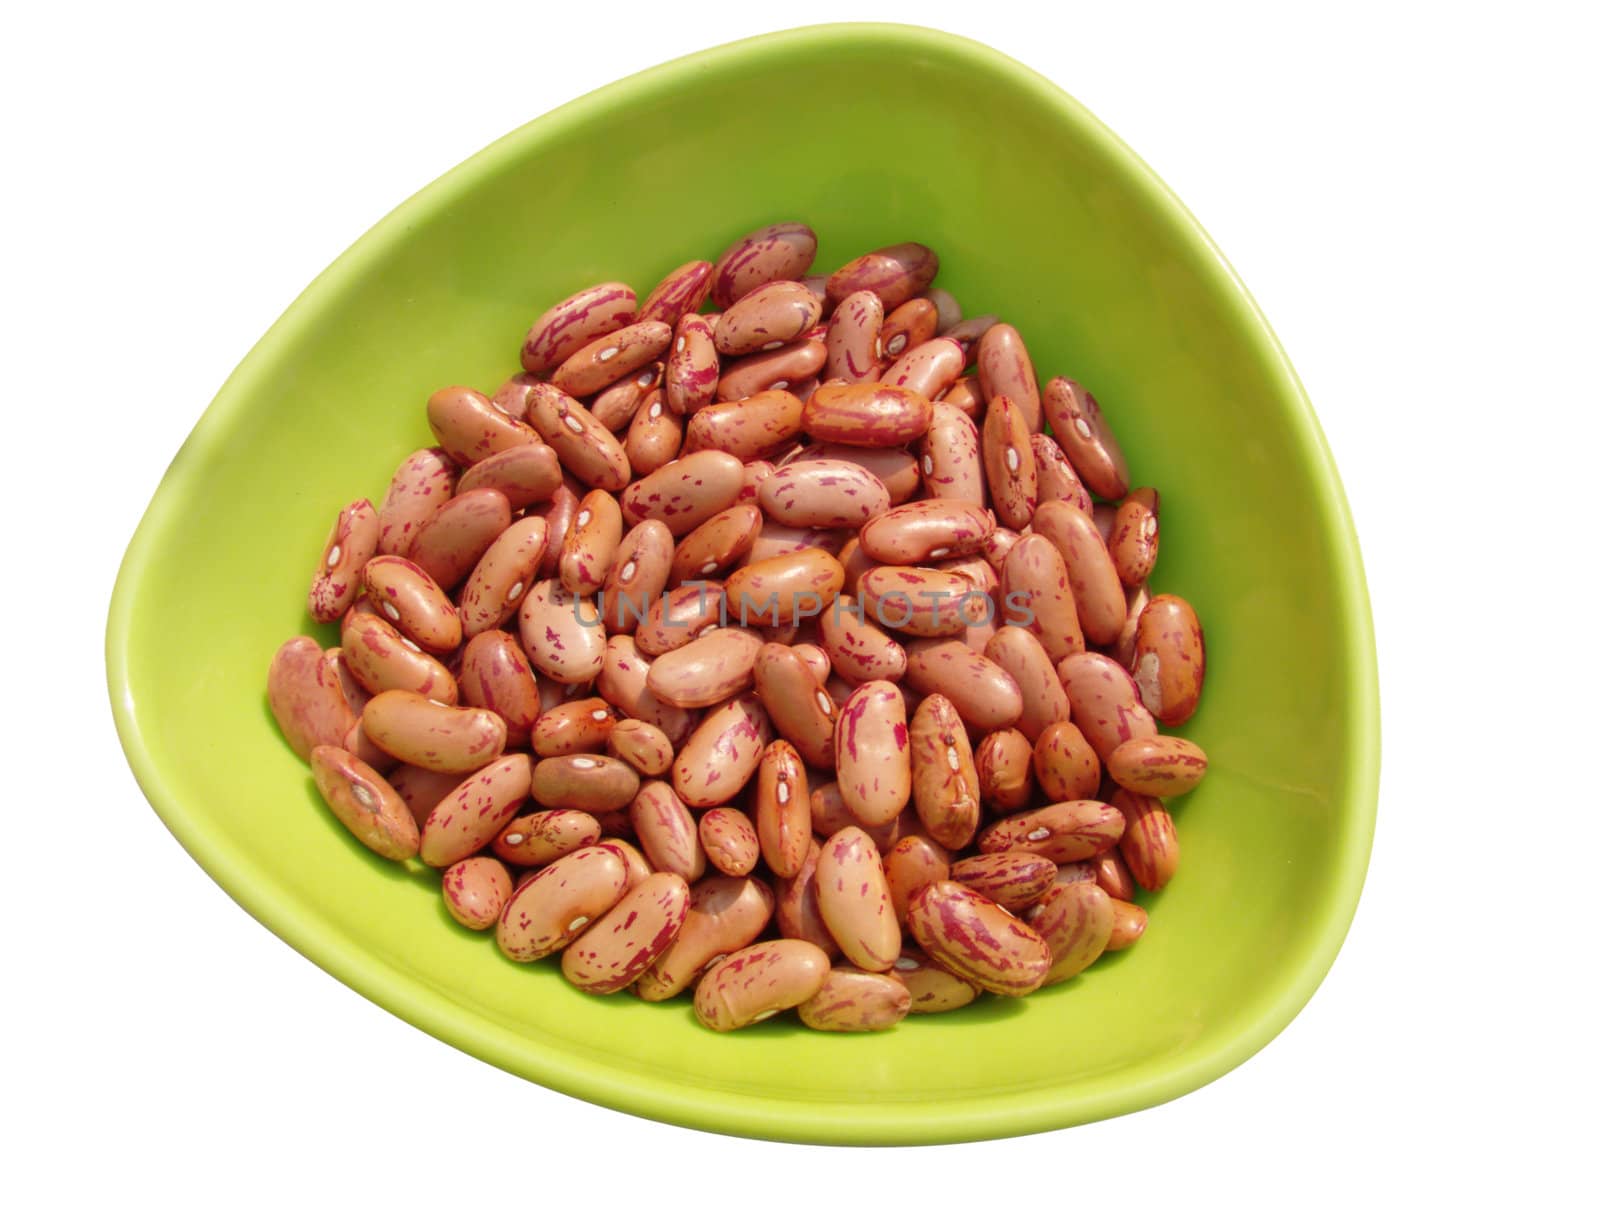 Red kidney beans (Phaseolus vulgaris) by lkant